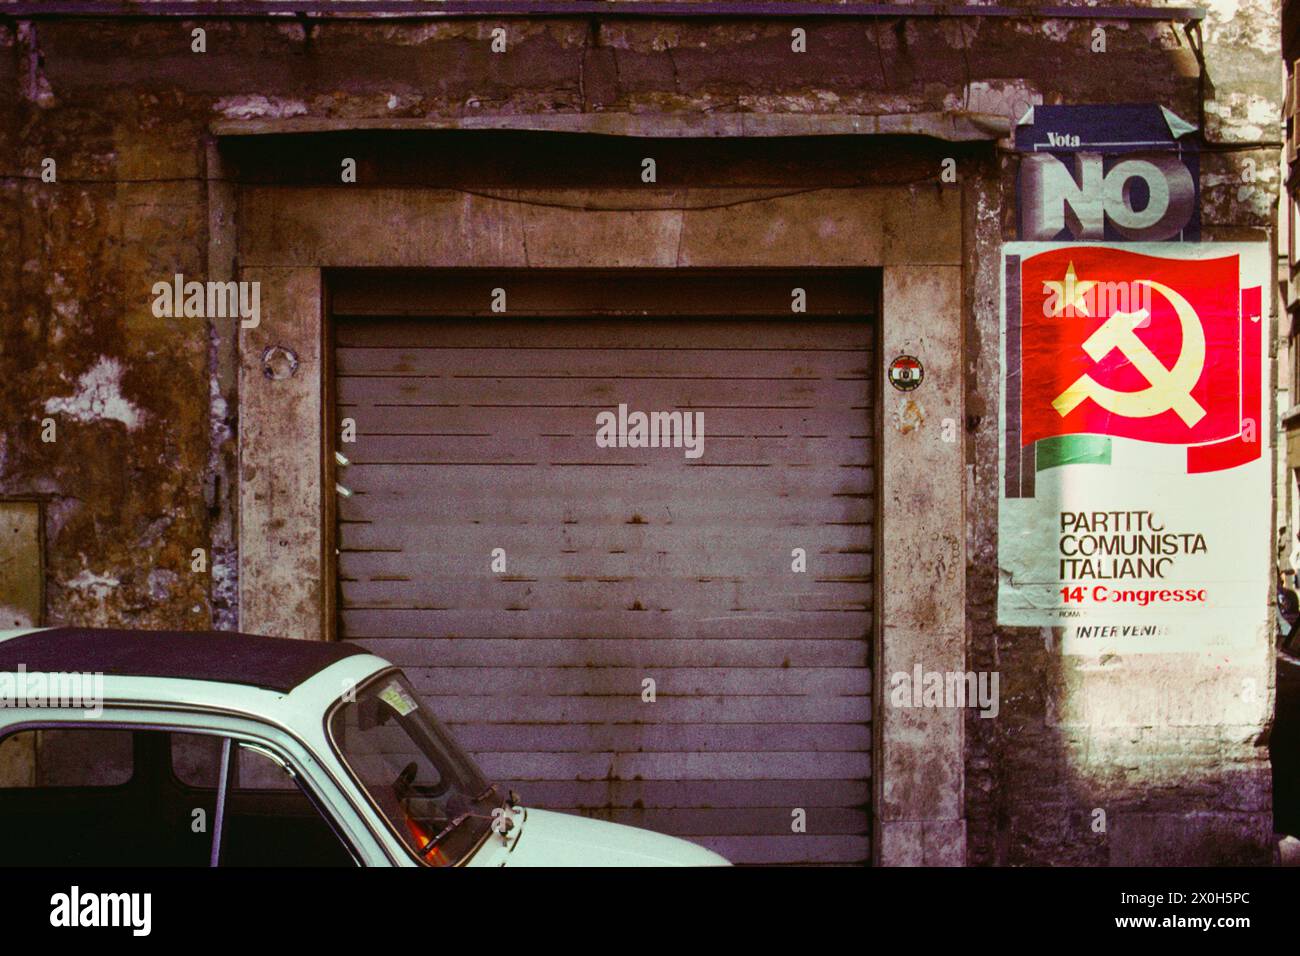 Nel quartiere fatiscente di Trastevere, si accende il poster del Partito Comunista Italiano [traduzione automatizzata] Foto Stock